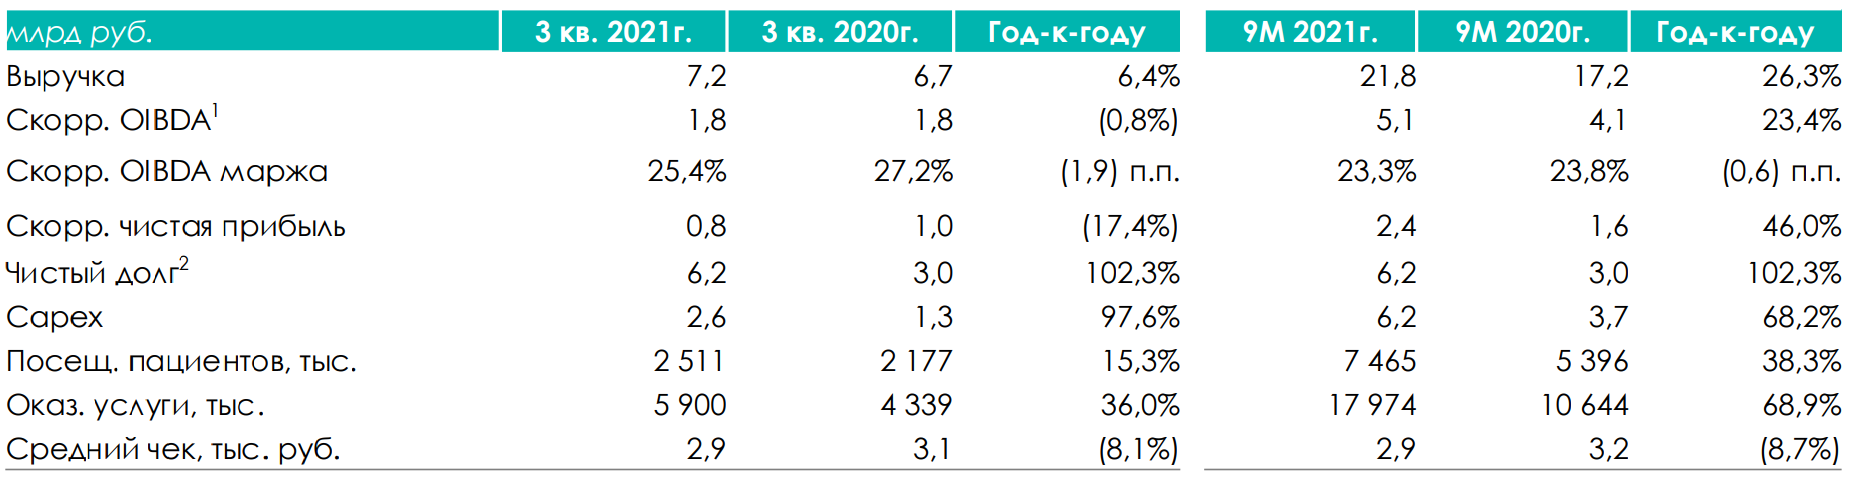 Рис. 4. Финансовые показатели Медси, источник: Финансовые результаты АФК “Система” за 3 квартал 2021 года